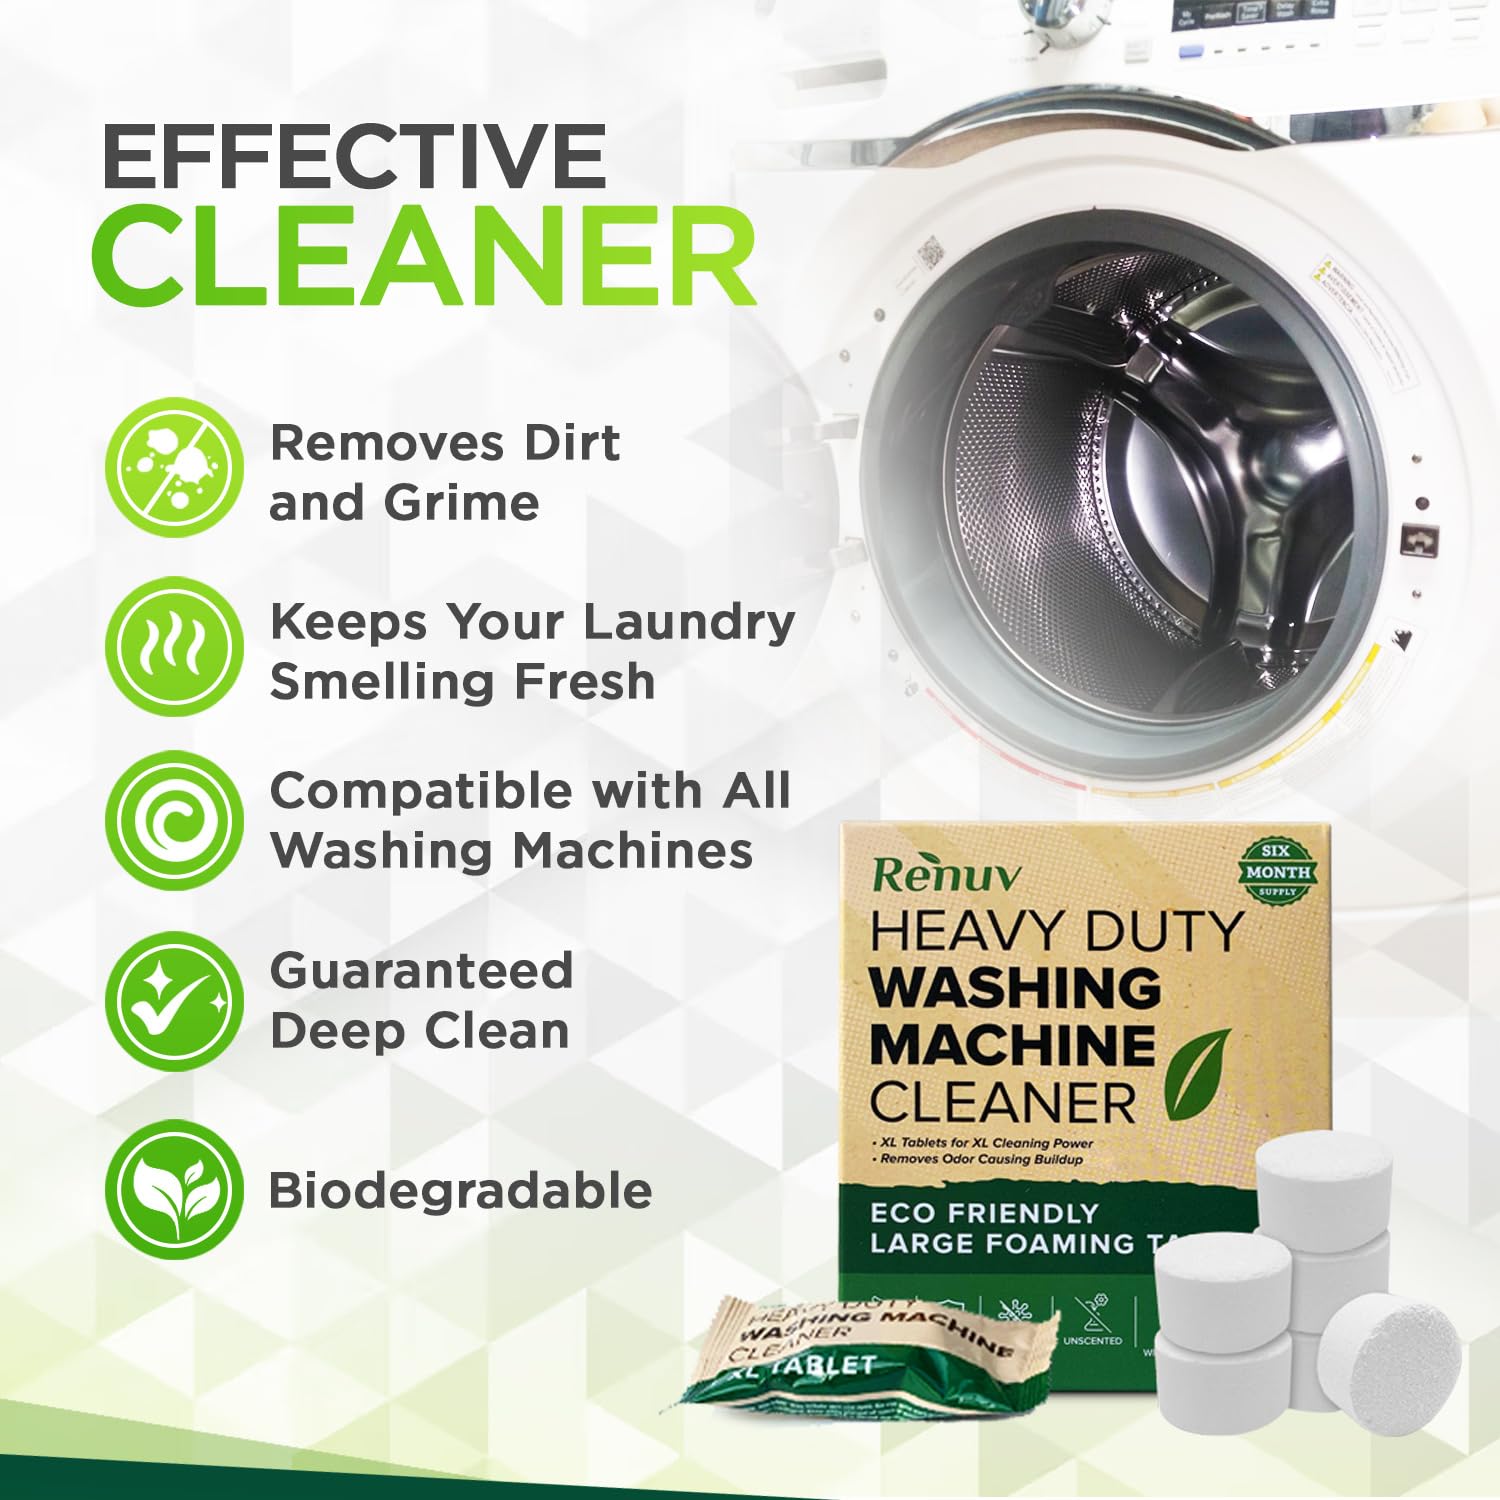 Renuv Washing Machine, Dishwasher and Garbage Disposal Cleaner Bundle - Buy All 3 and Save!